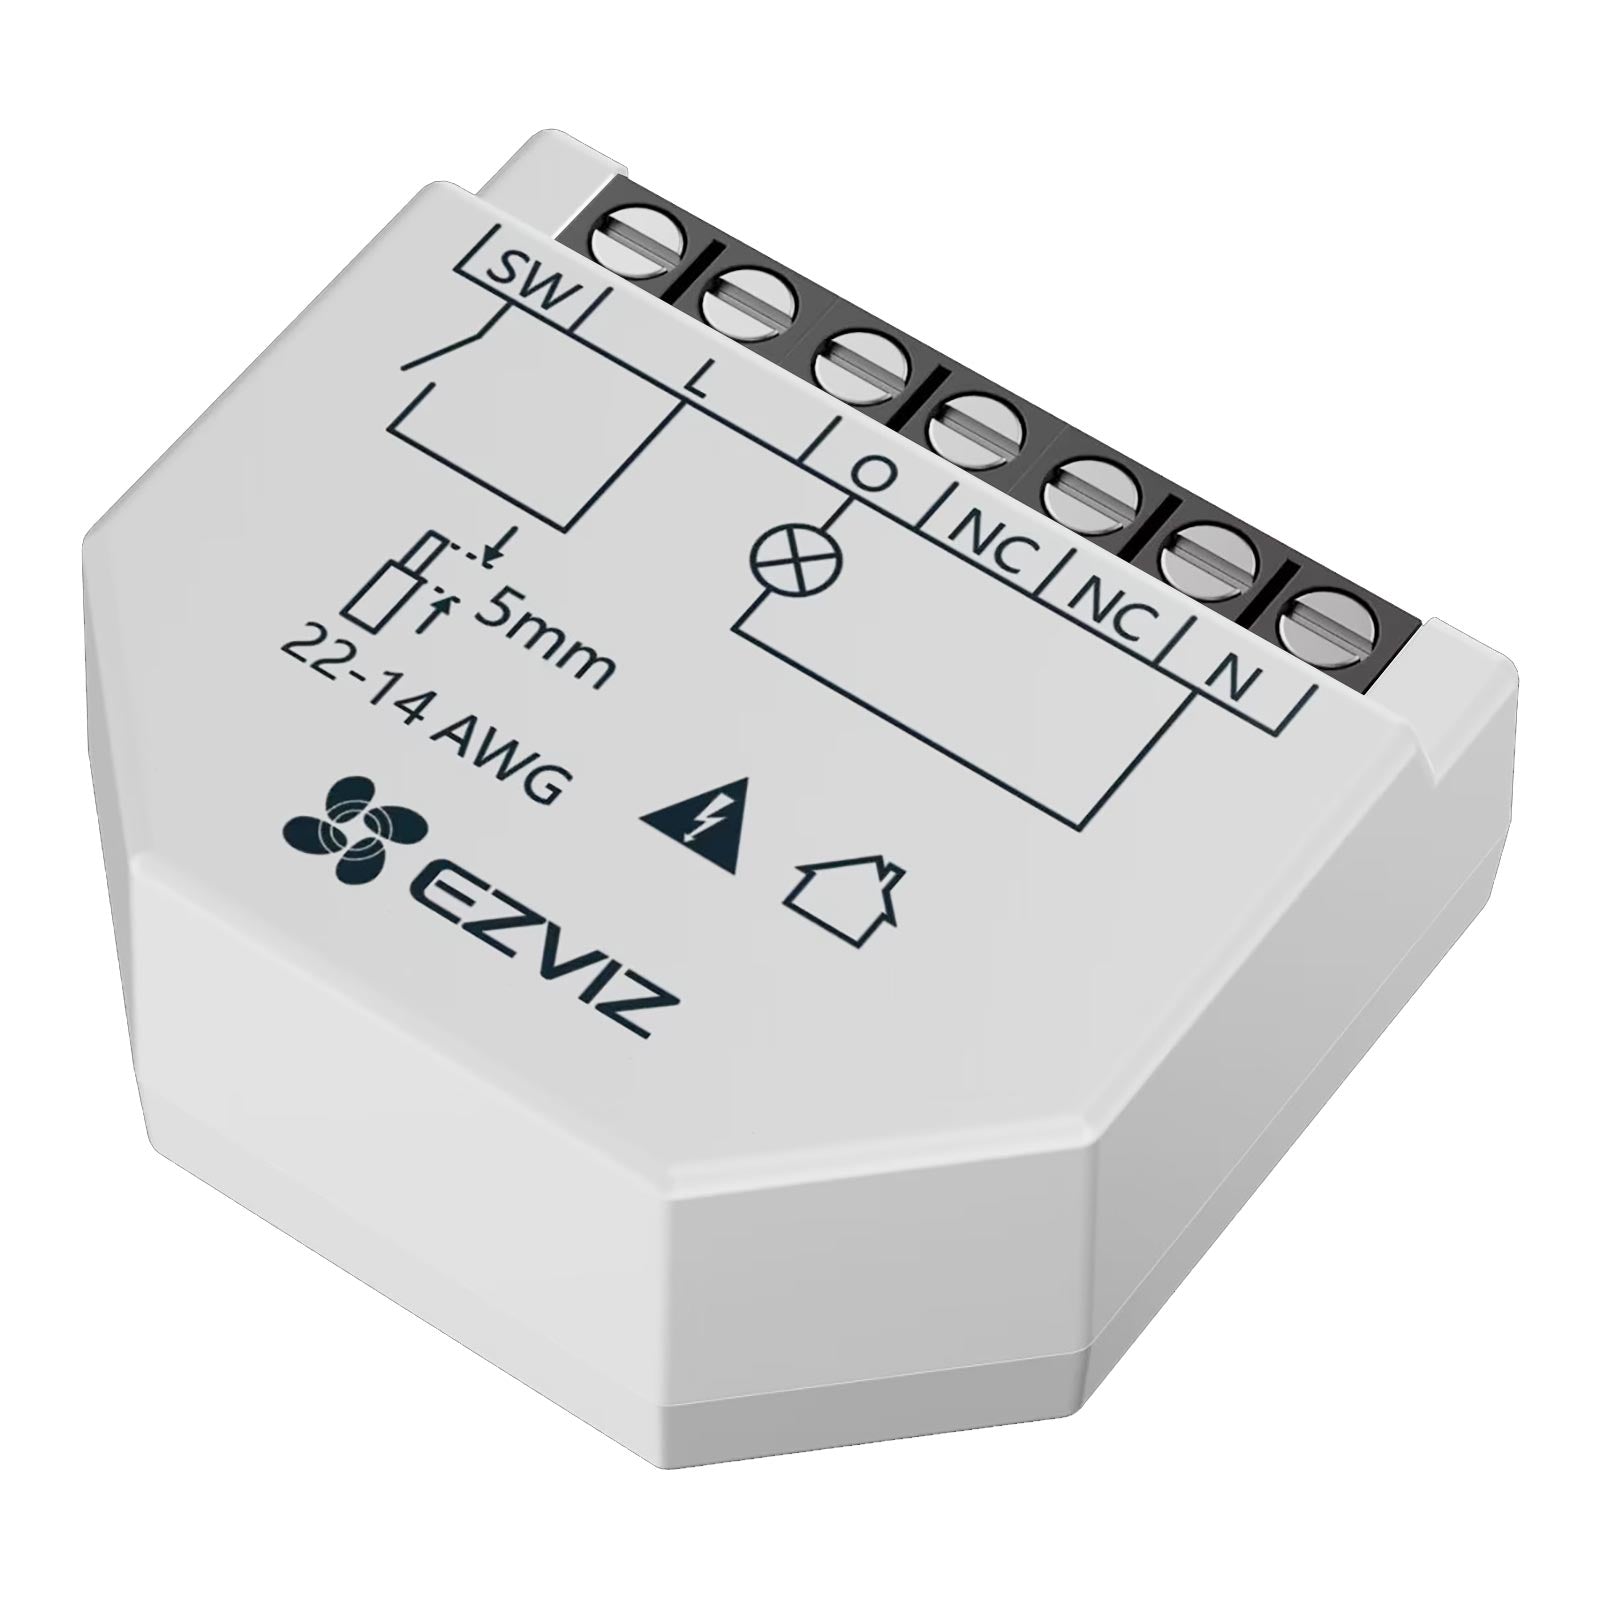 Mini rele EZVIZ impianti domotica interruttore 1 CH canale SMART WiFi controllo luci compatibile APP Alexa e Google